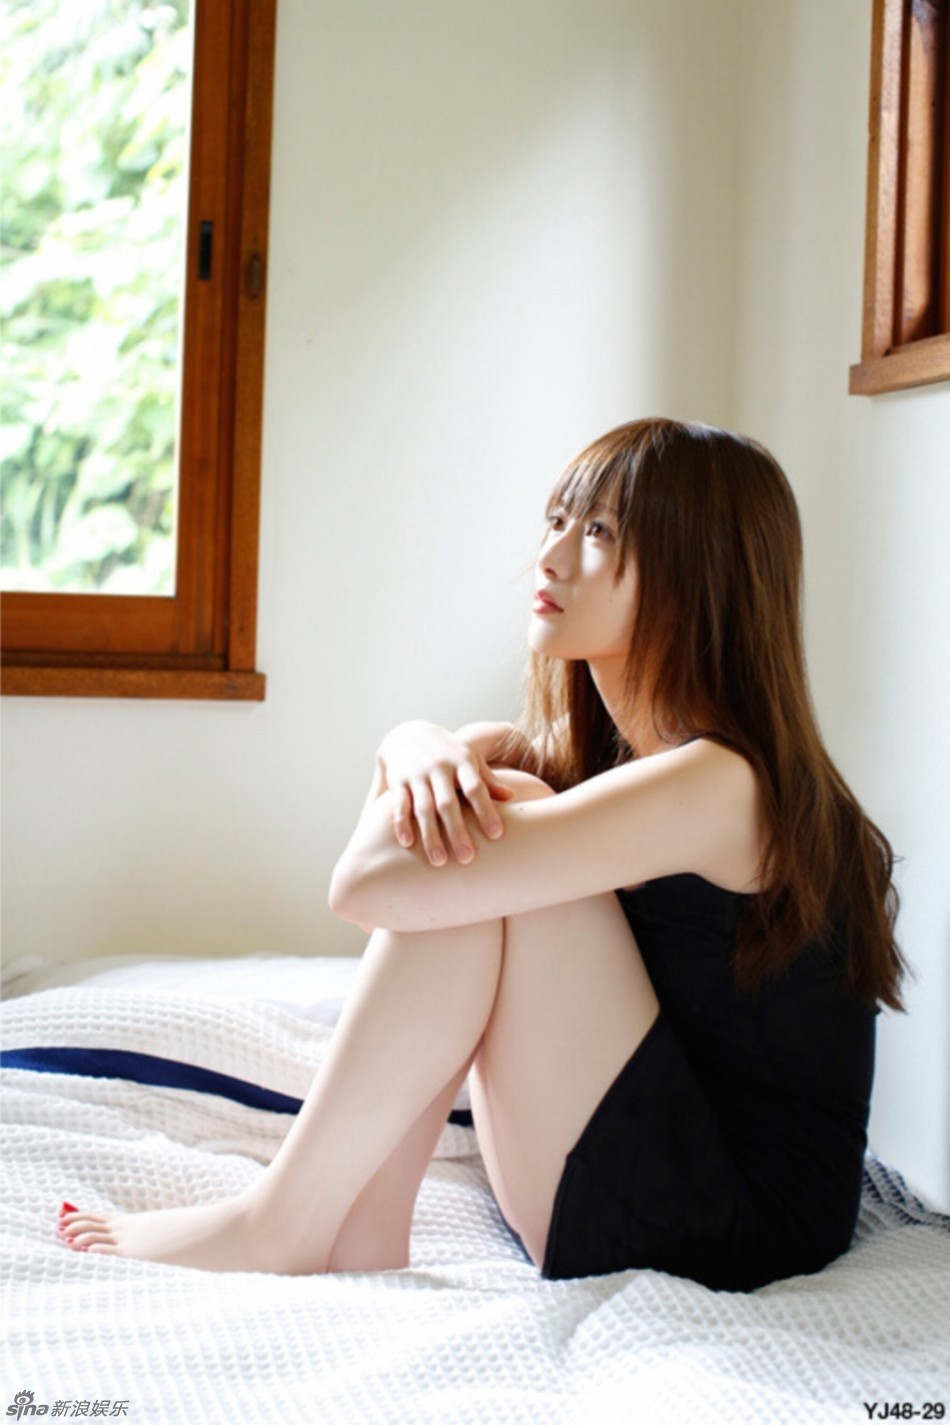 日本女星白石麻衣闺房写真 慵懒秀性感大长腿